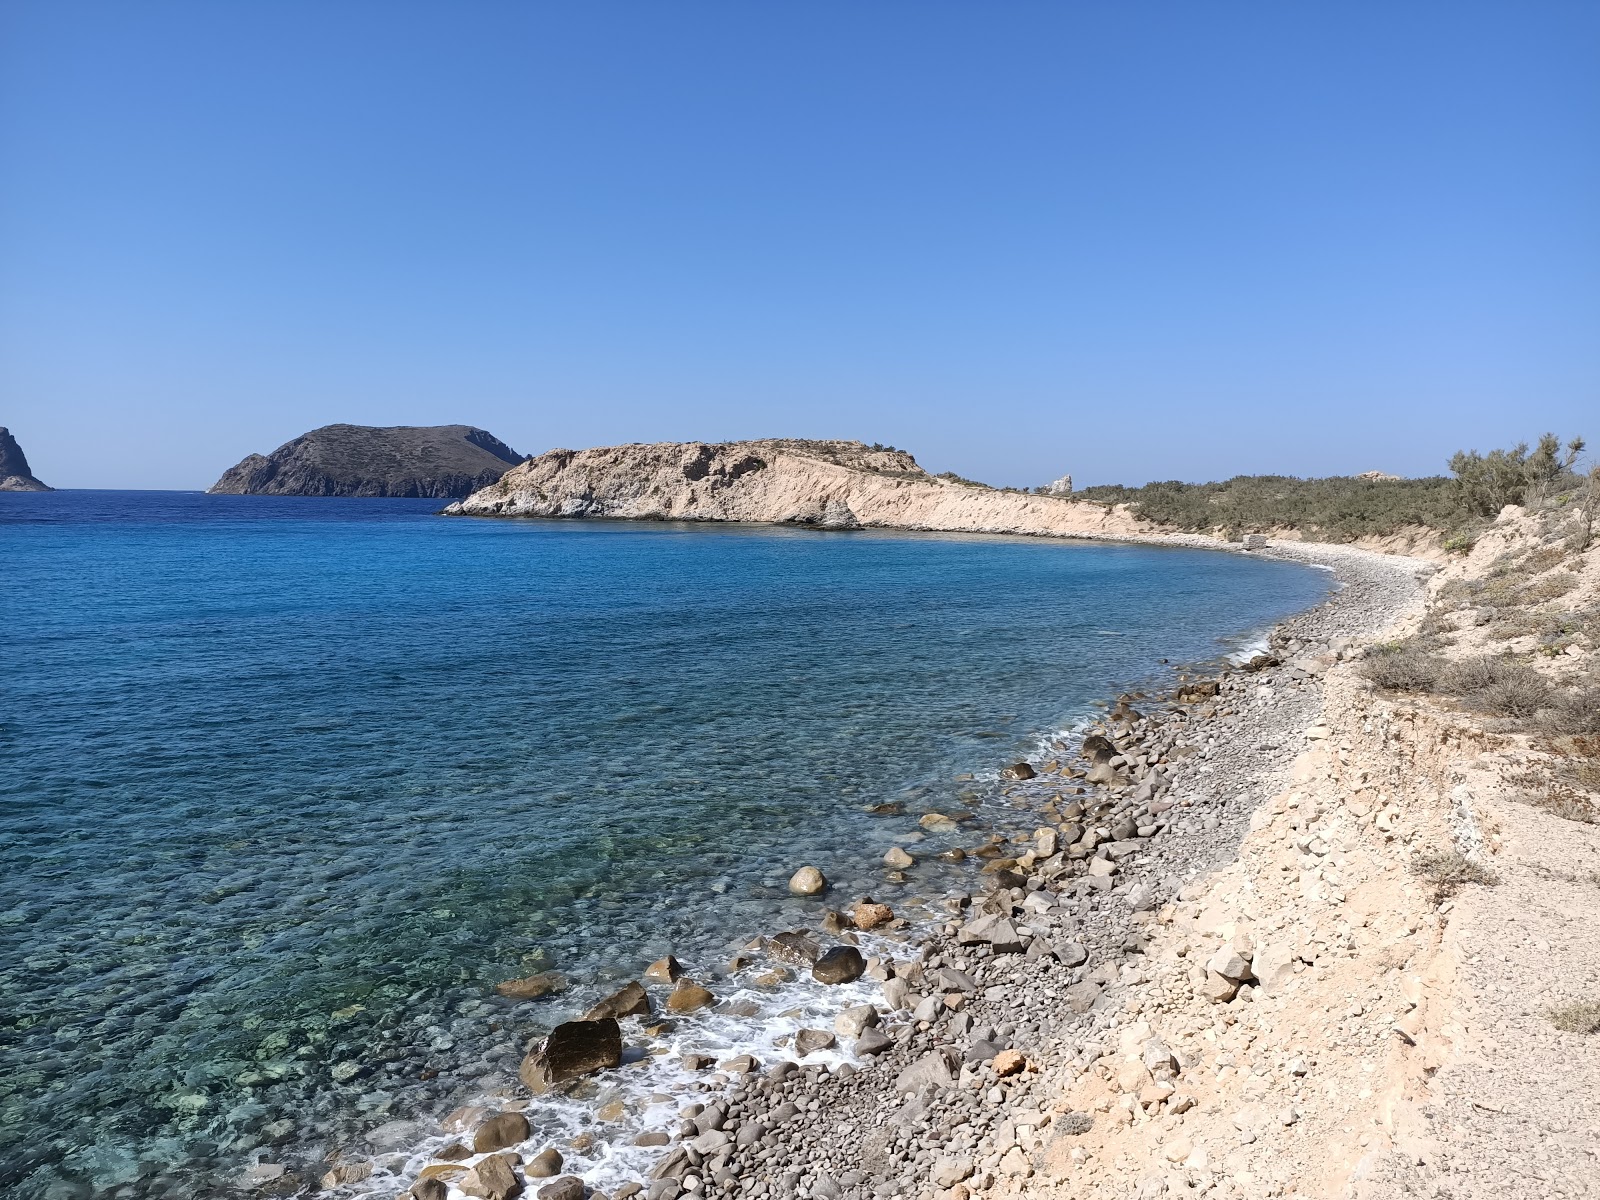 Nerodafni beach'in fotoğrafı mavi saf su yüzey ile